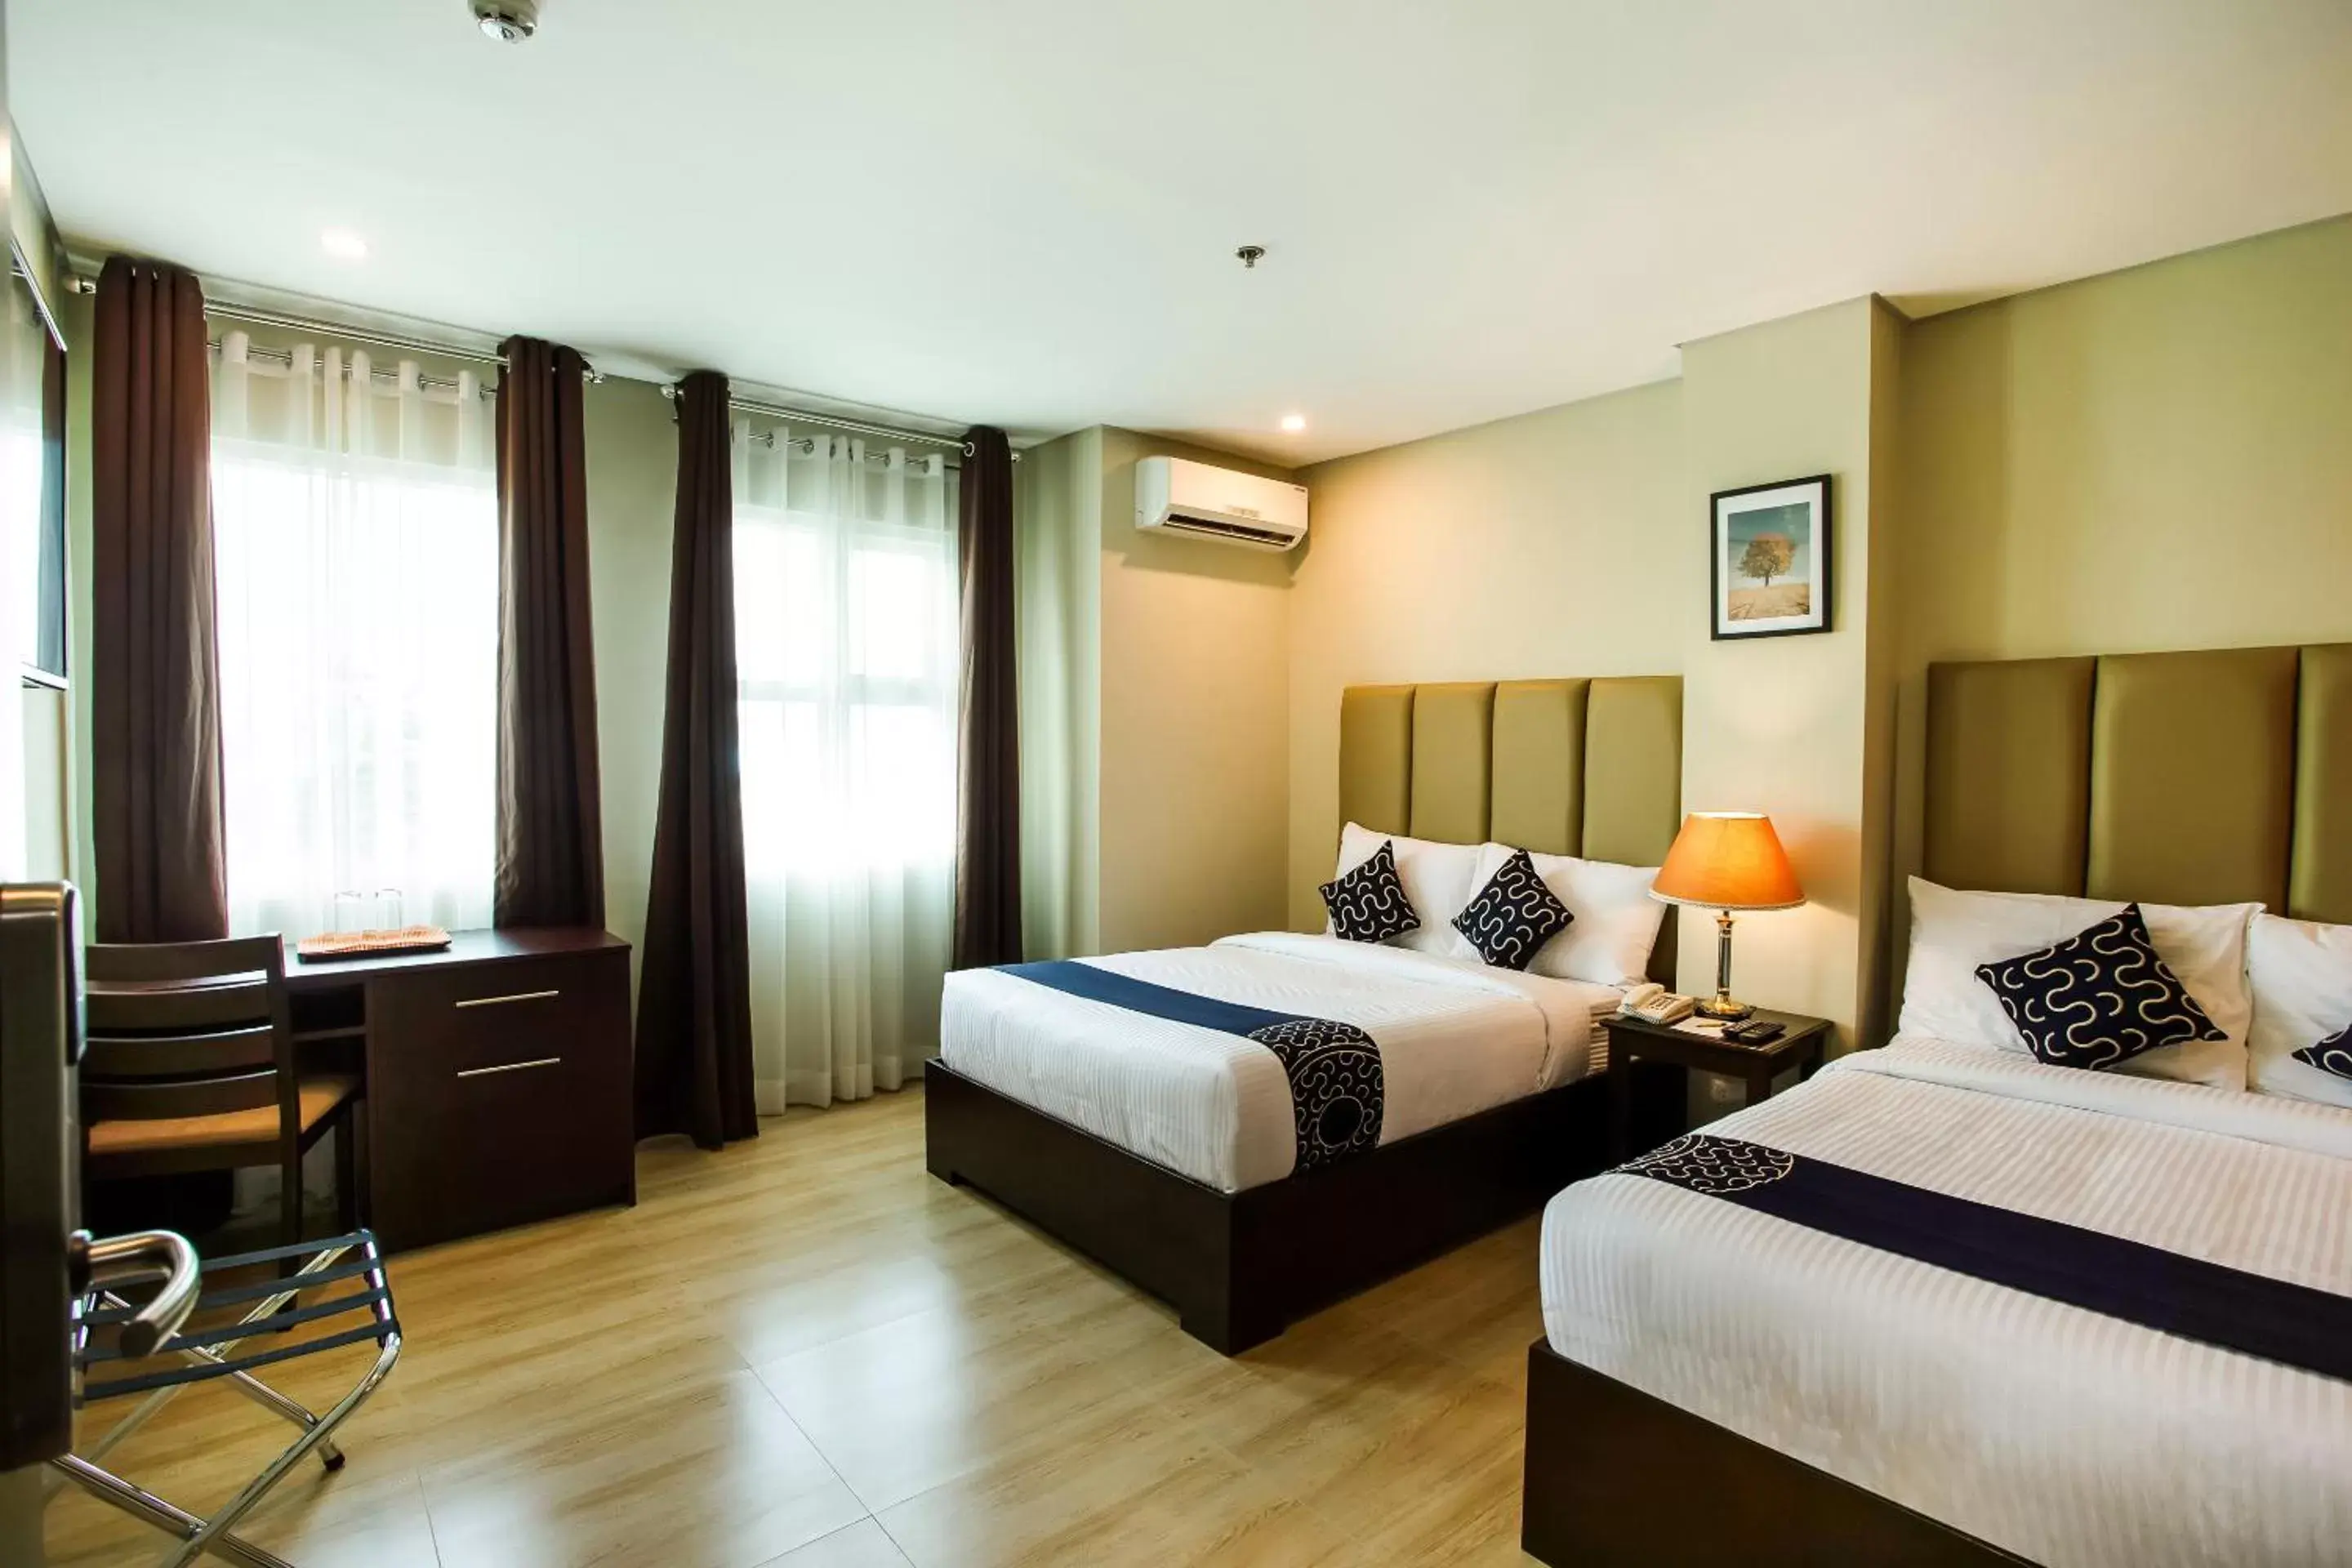 Bedroom, Bed in Capital O 461 Asrodel Hotel